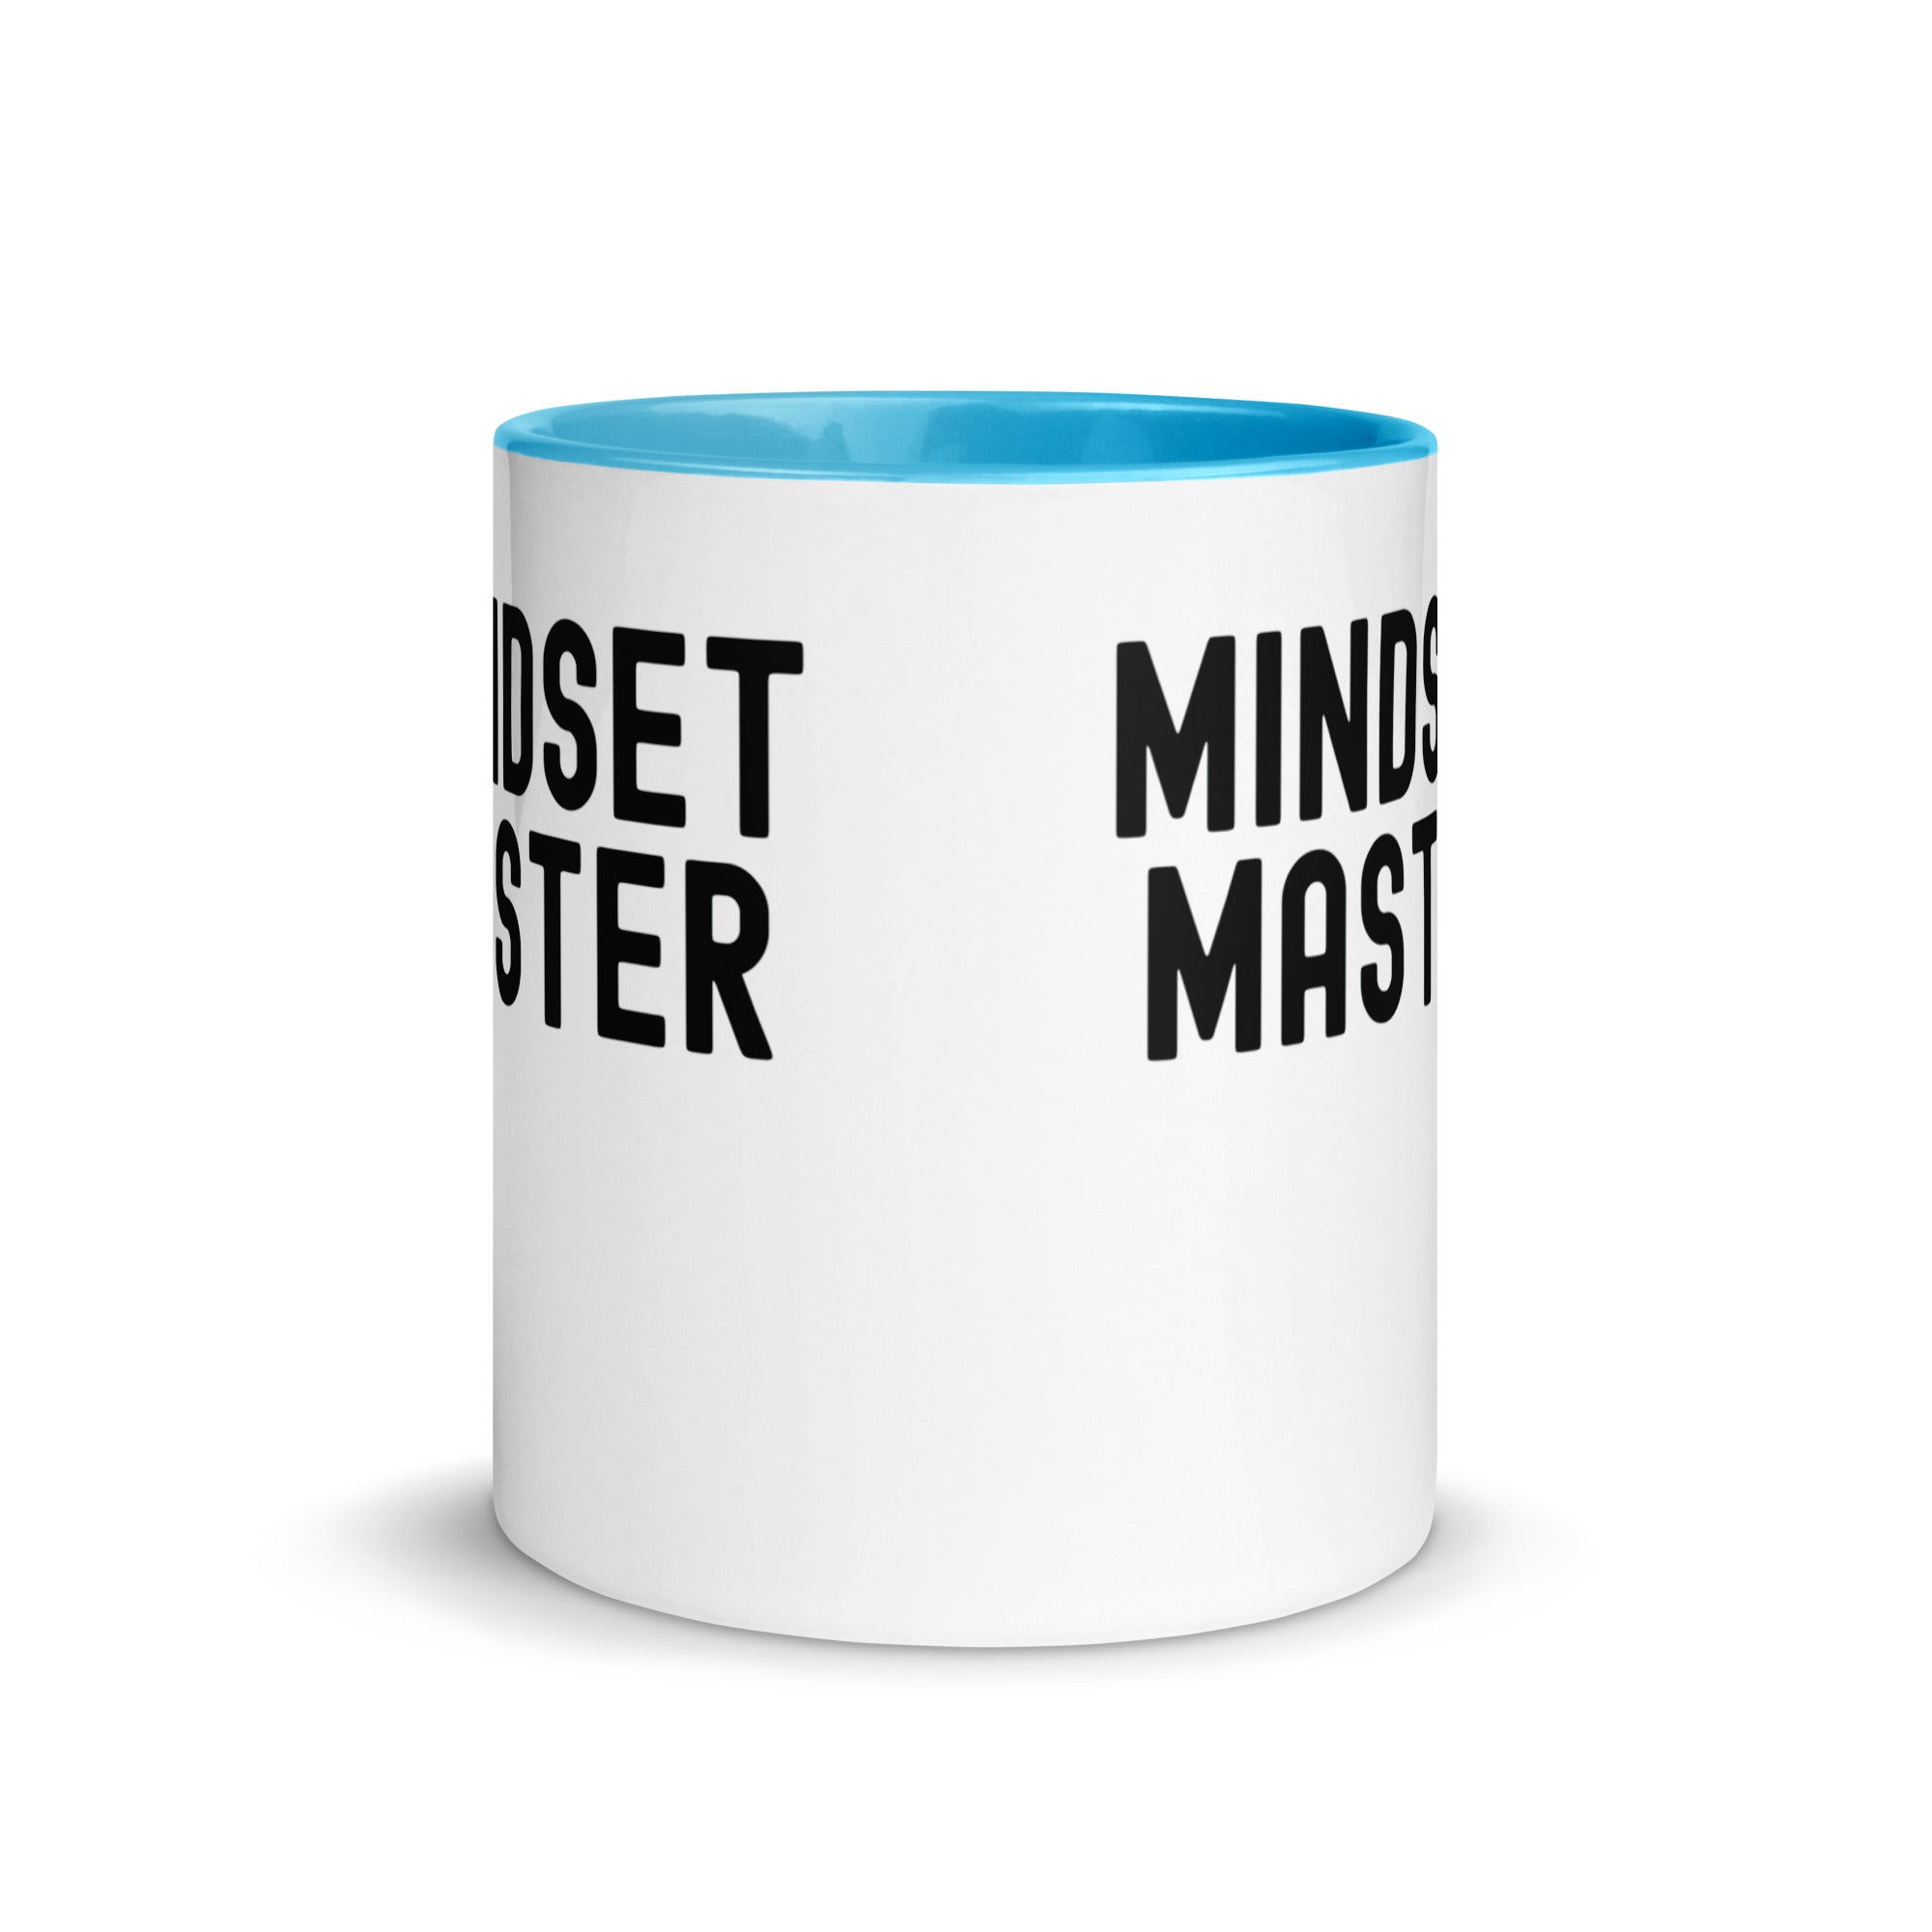 Mug with Color Inside | Mindset Master